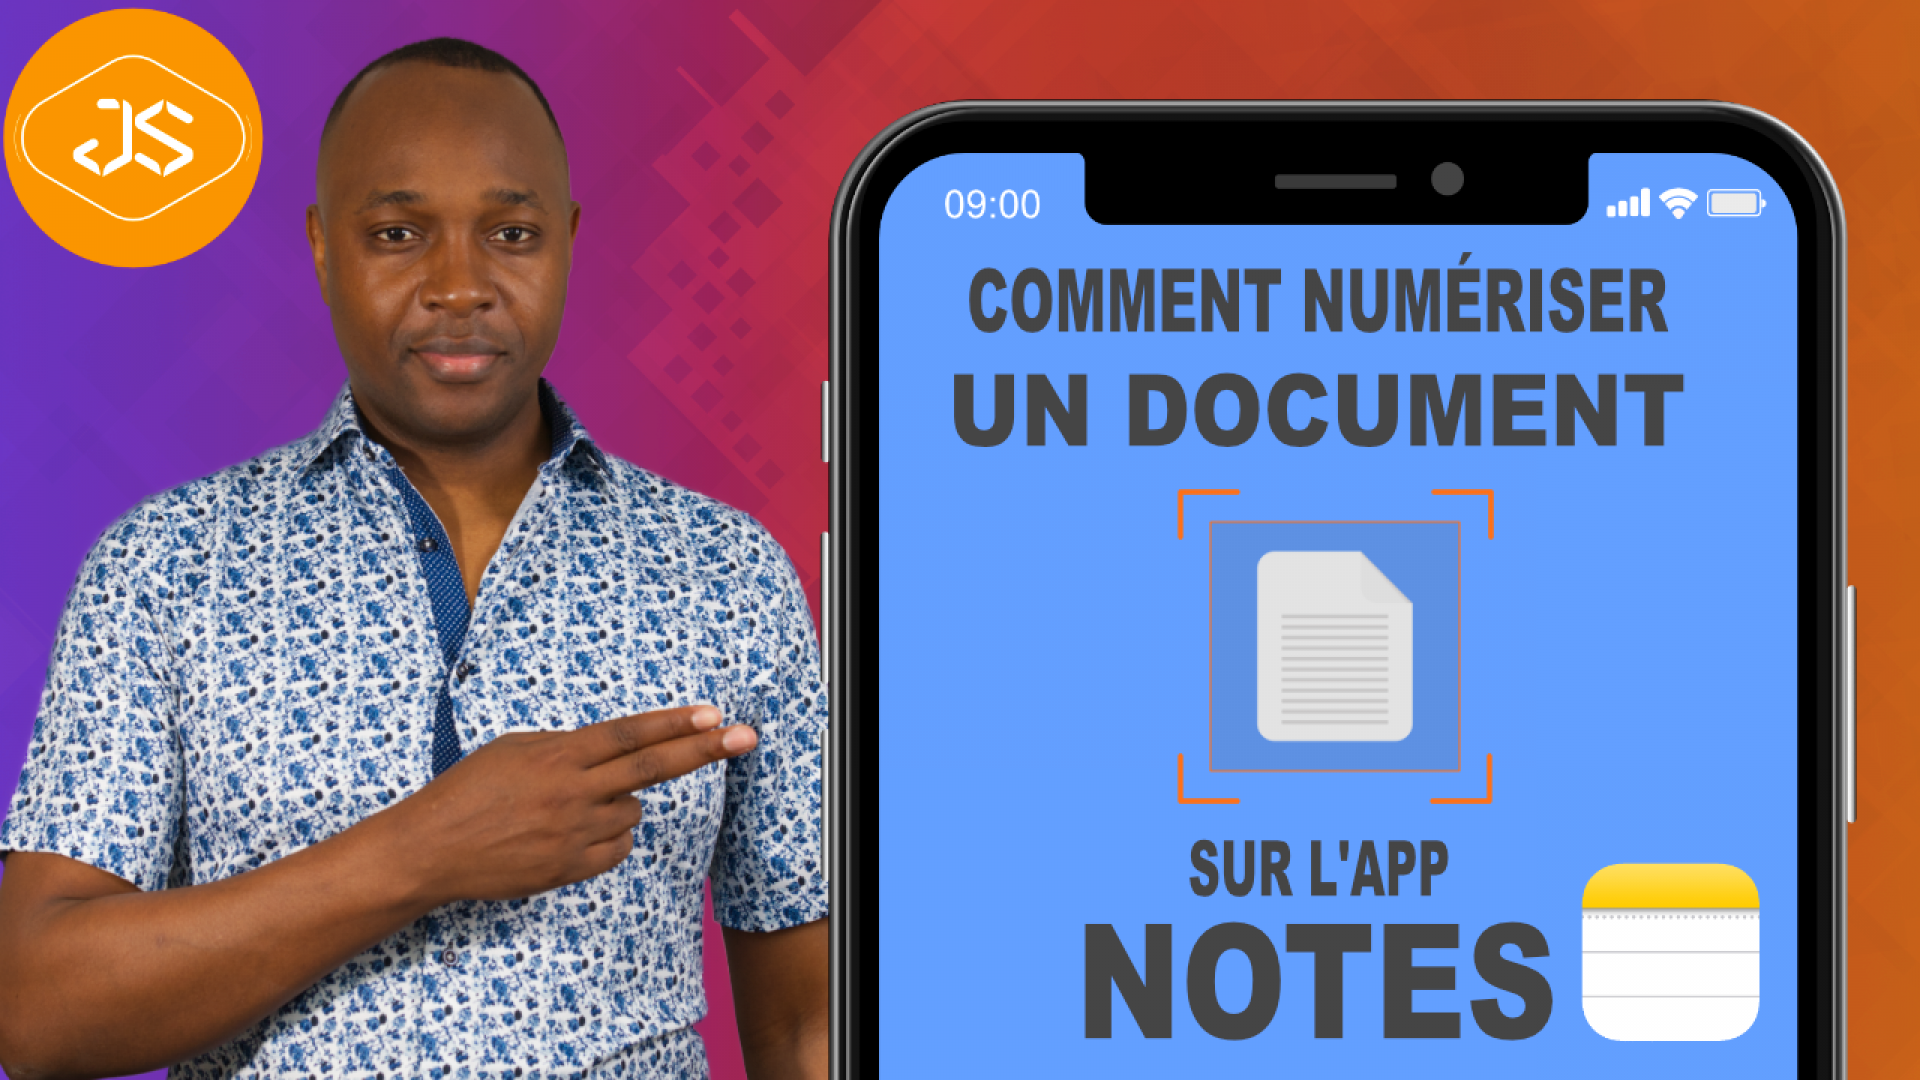 Comment numériser vos documents, images sur l’app Notes de votre iPhone, iPad